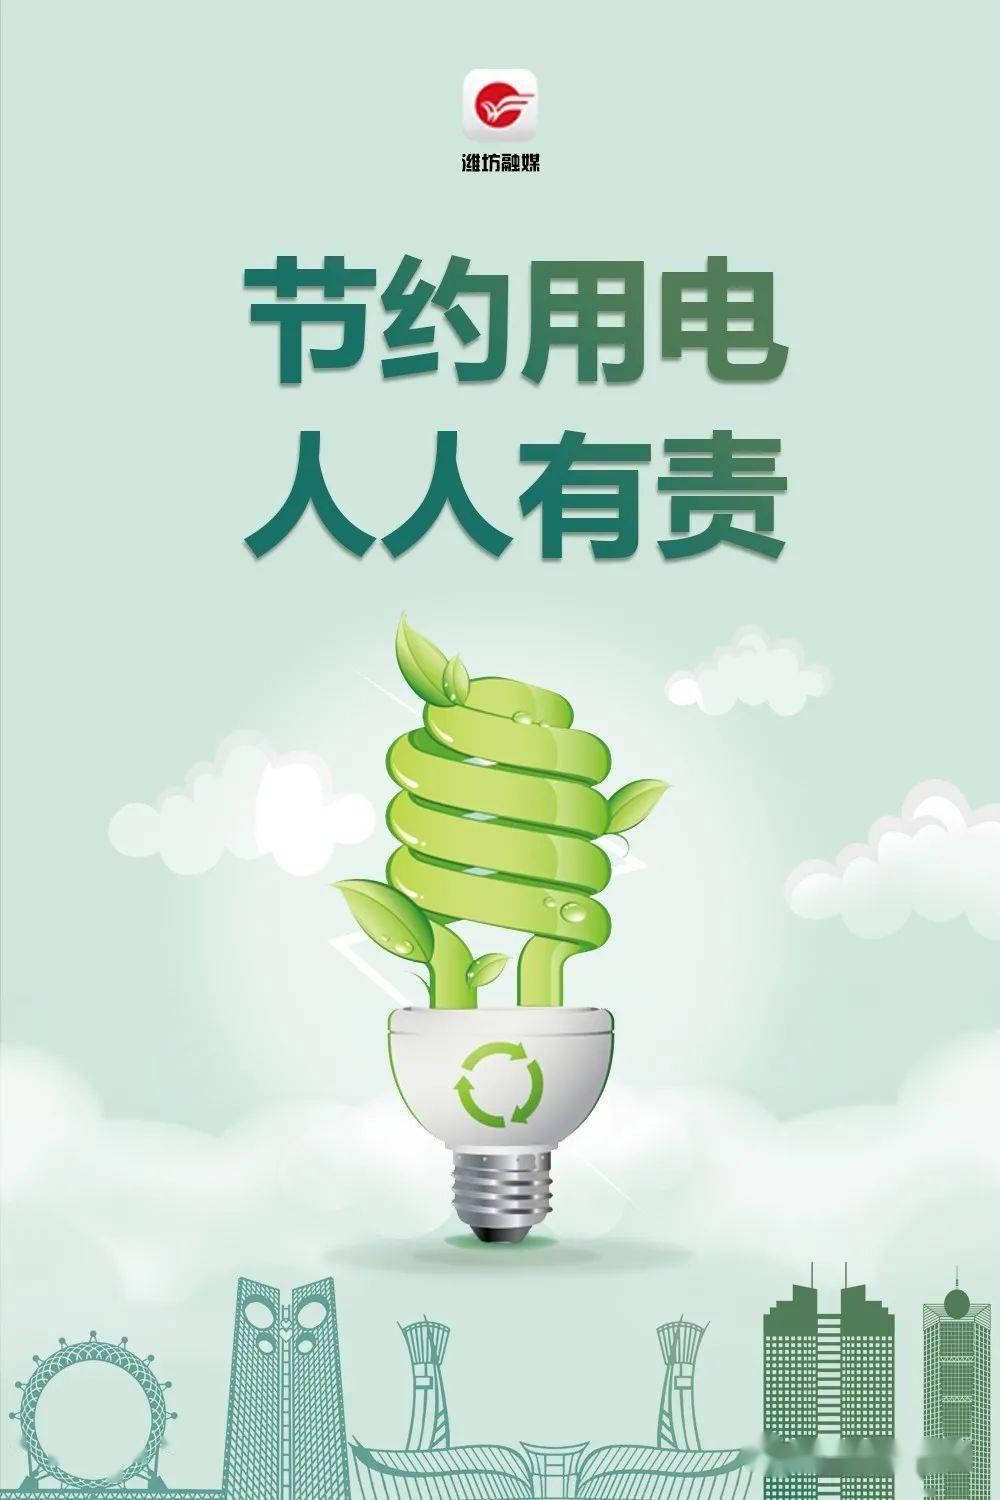 献出您的一份力!潍坊高新区倡议:一起节约用电